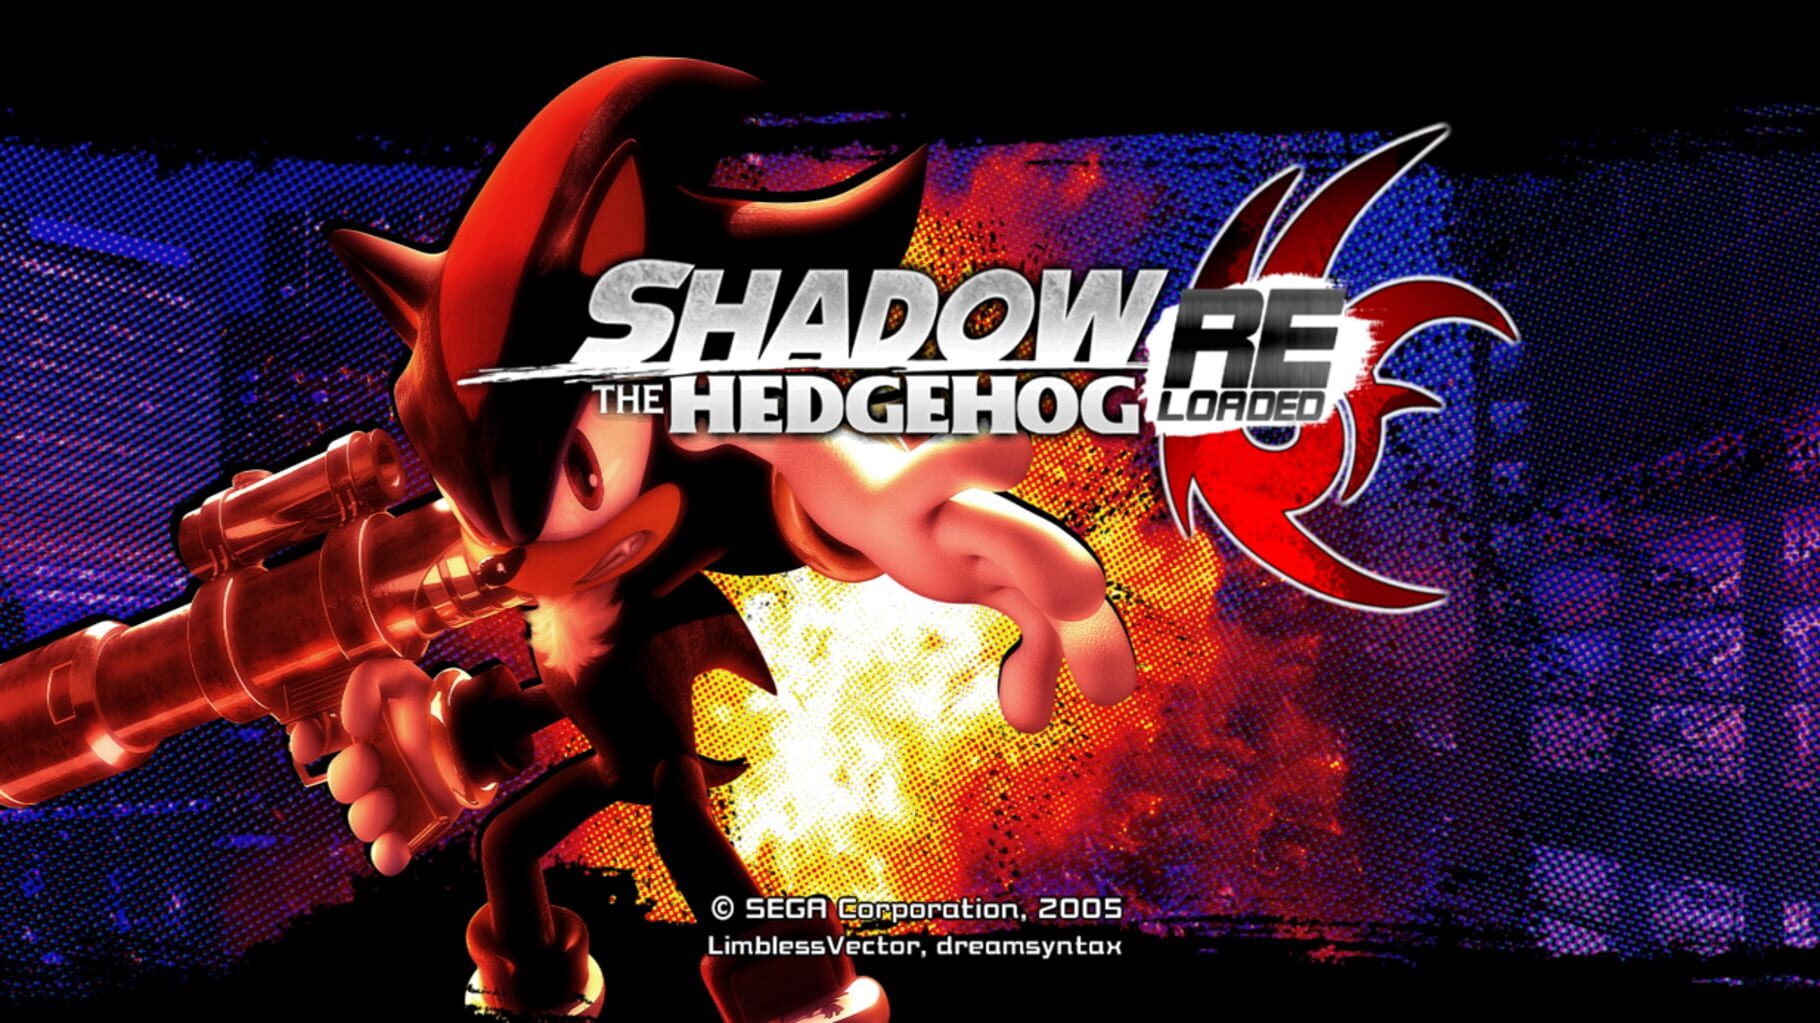 Shadow the Hedgehog two Players. Shadow the Hedgehog гейкуб. Shadow the Hedgehog Mod for GTA sa. Как победить шедоу